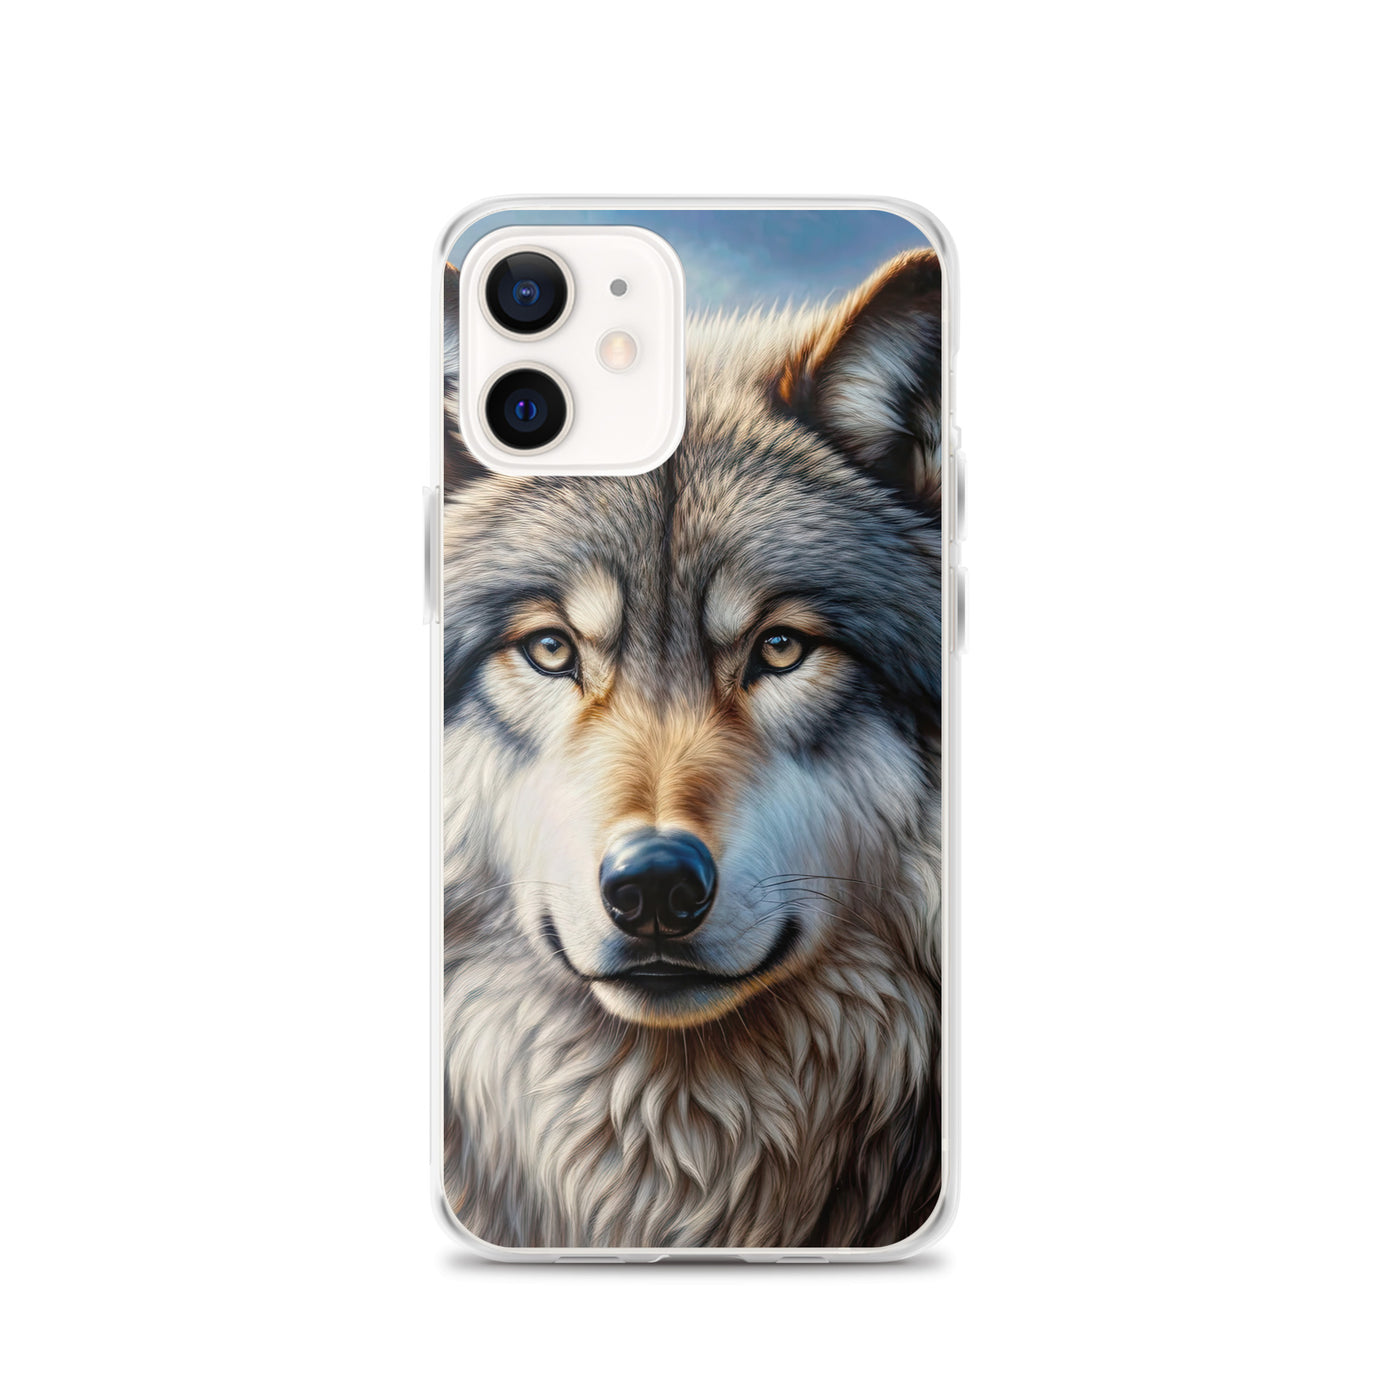 Porträt-Ölgemälde eines prächtigen Wolfes mit faszinierenden Augen (AN) - iPhone Schutzhülle (durchsichtig) xxx yyy zzz iPhone 12